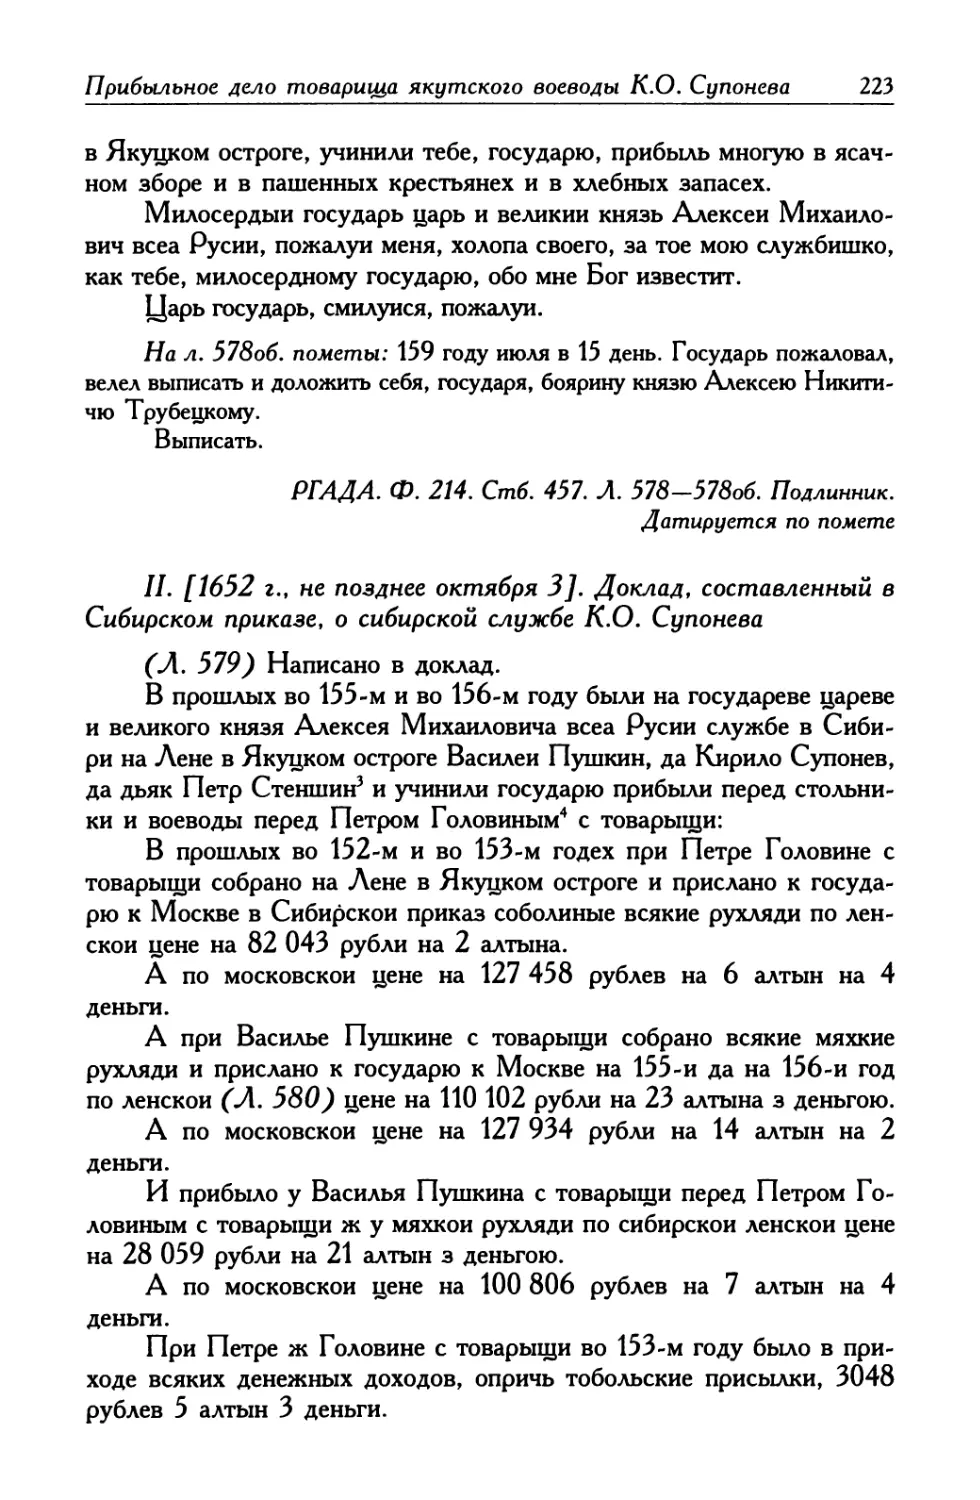 II. [1652 г., не позднее октября 3]. Доклад, составленный в Сибирском приказе, о сибирской службе К. О. Супонева